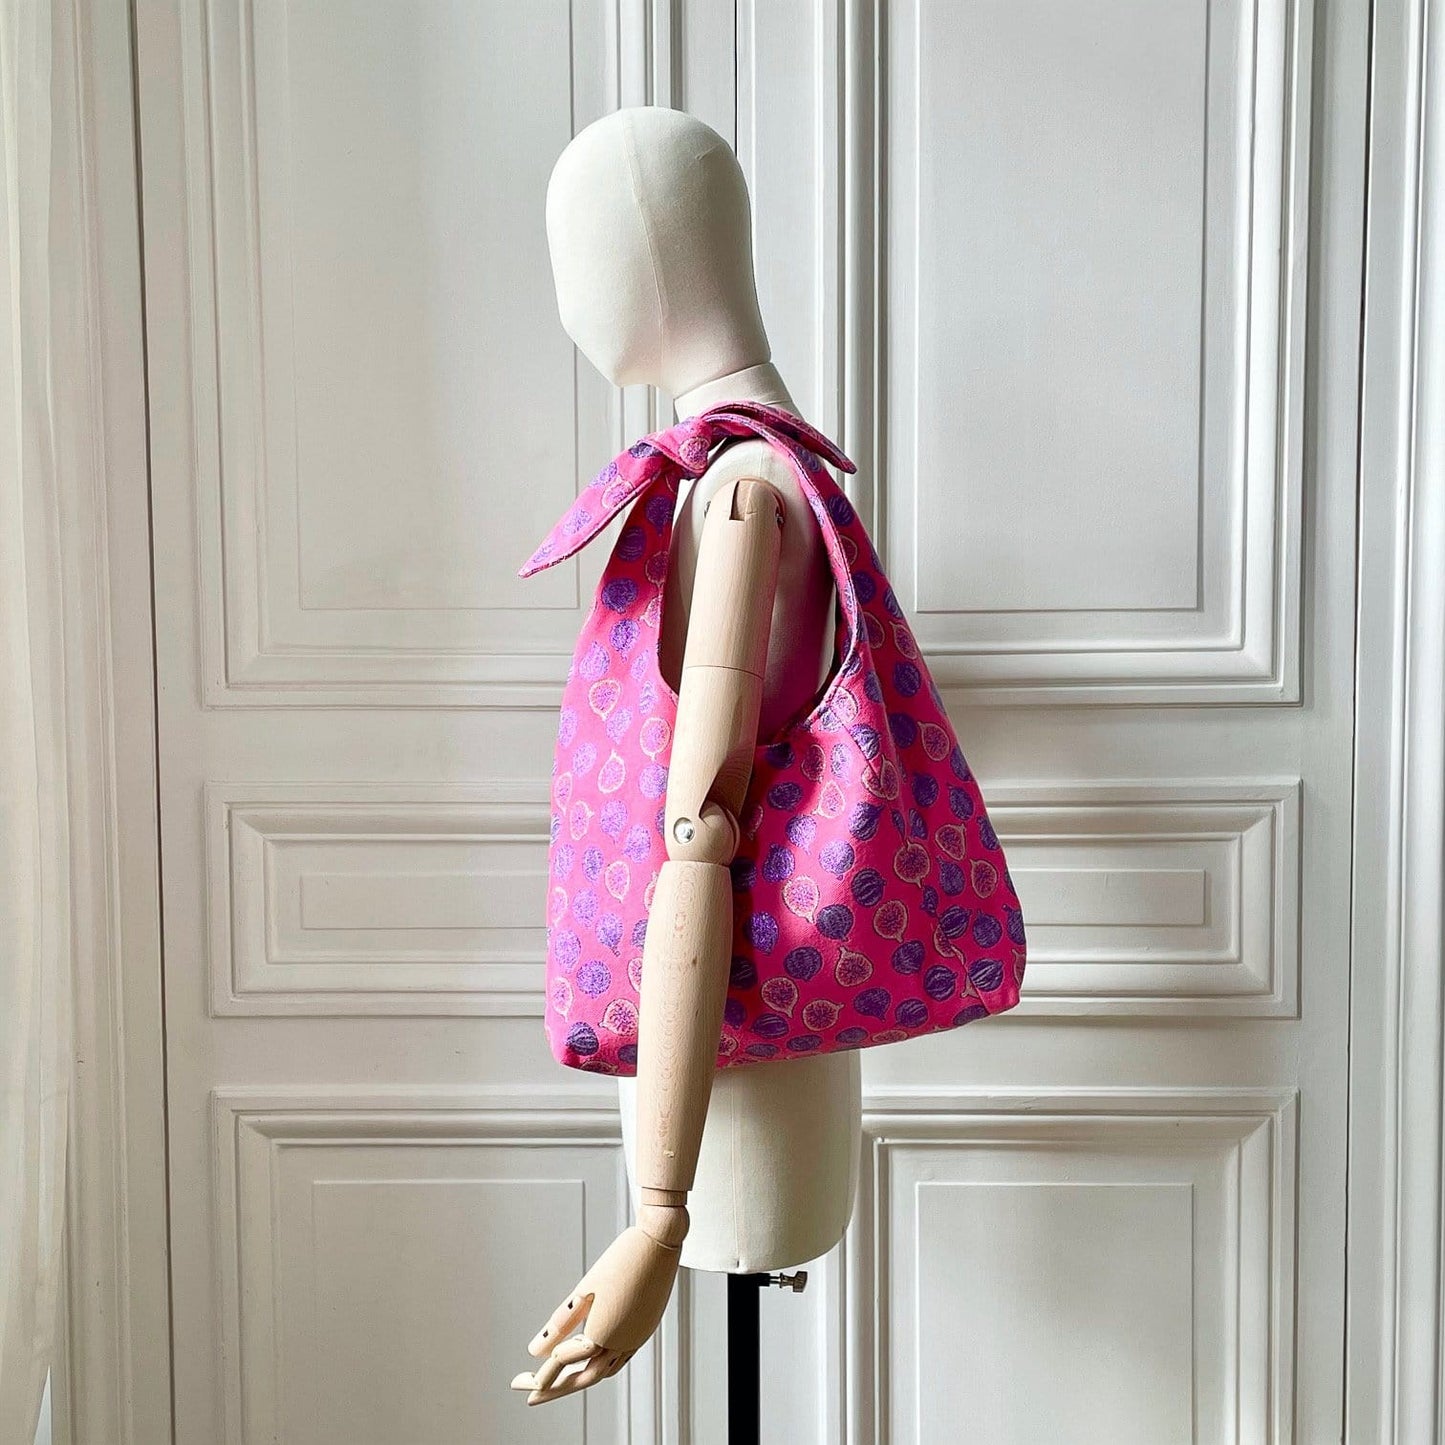 Sac Angèle en tweed figues rose, lilas et argenté tissé et fabriqué en France